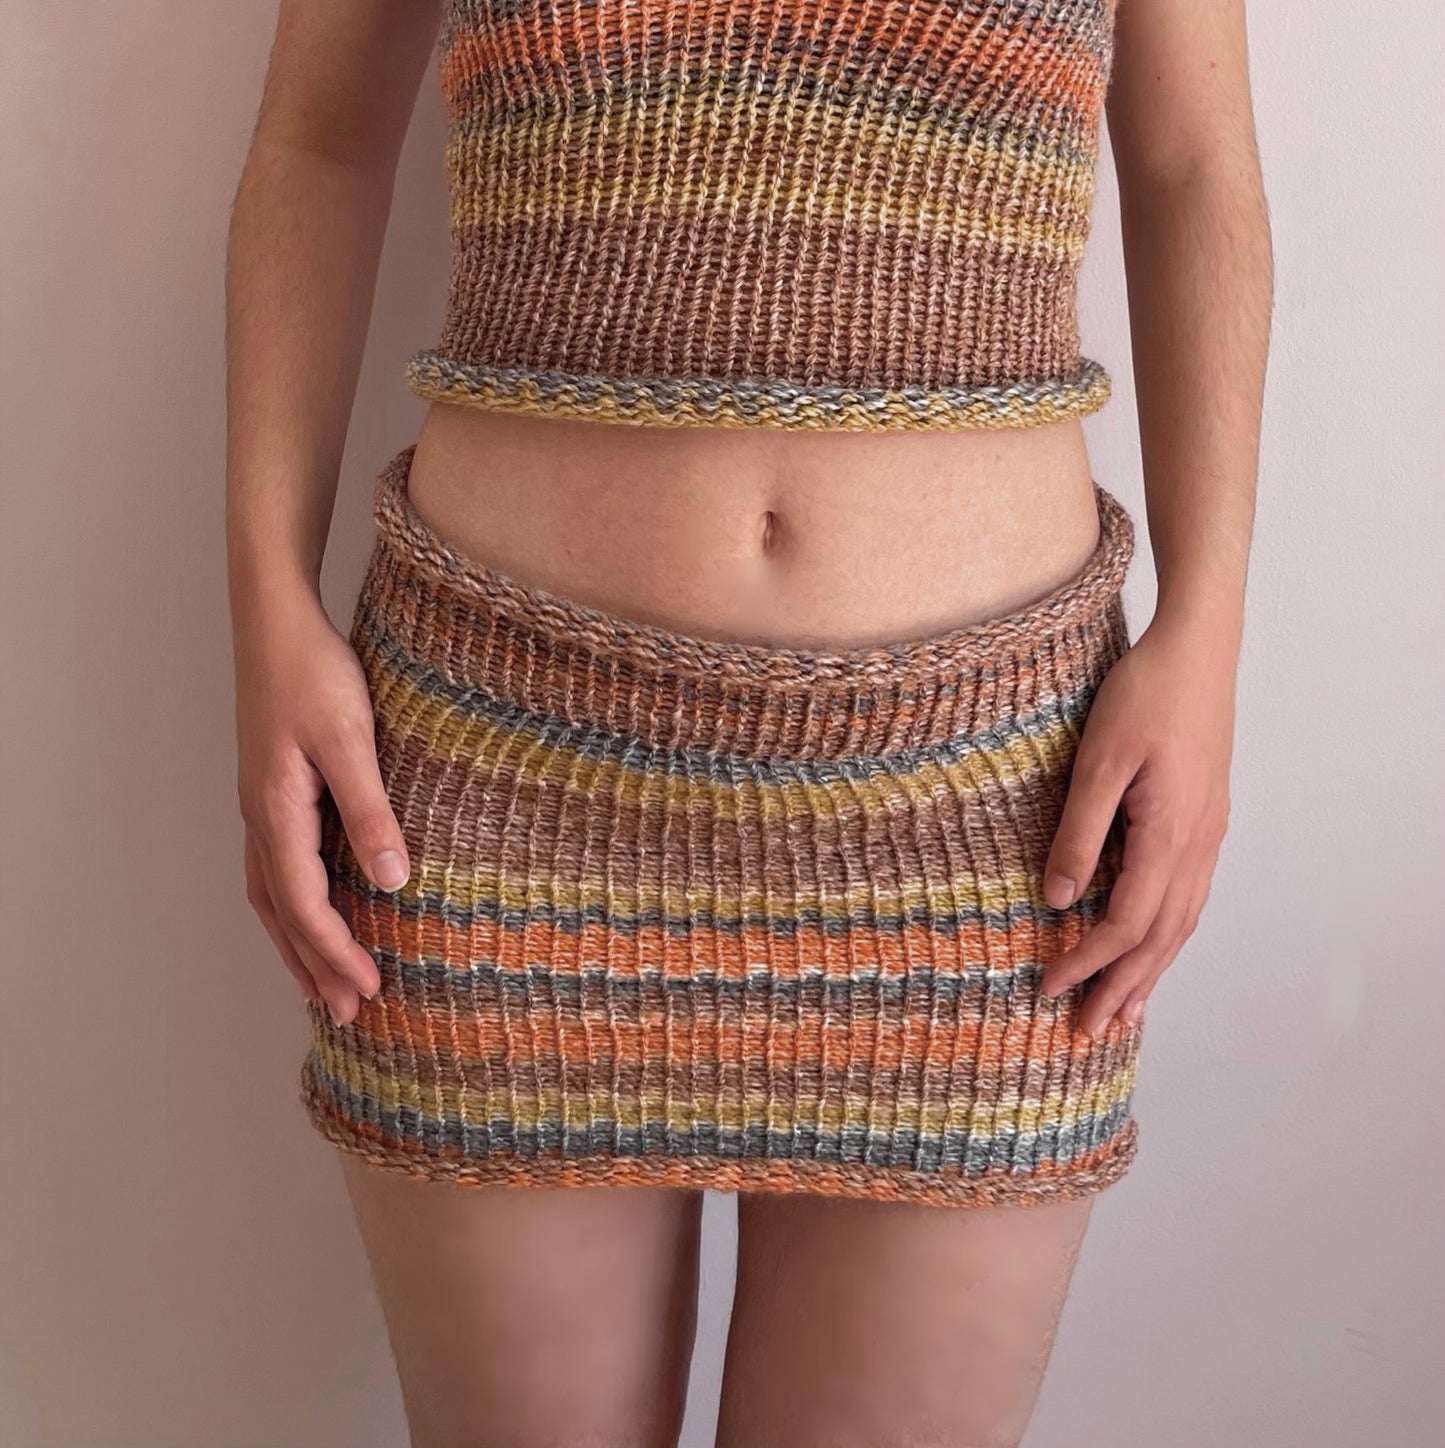 Handmade knitted mini skirt in orange, mustard yellow and grey